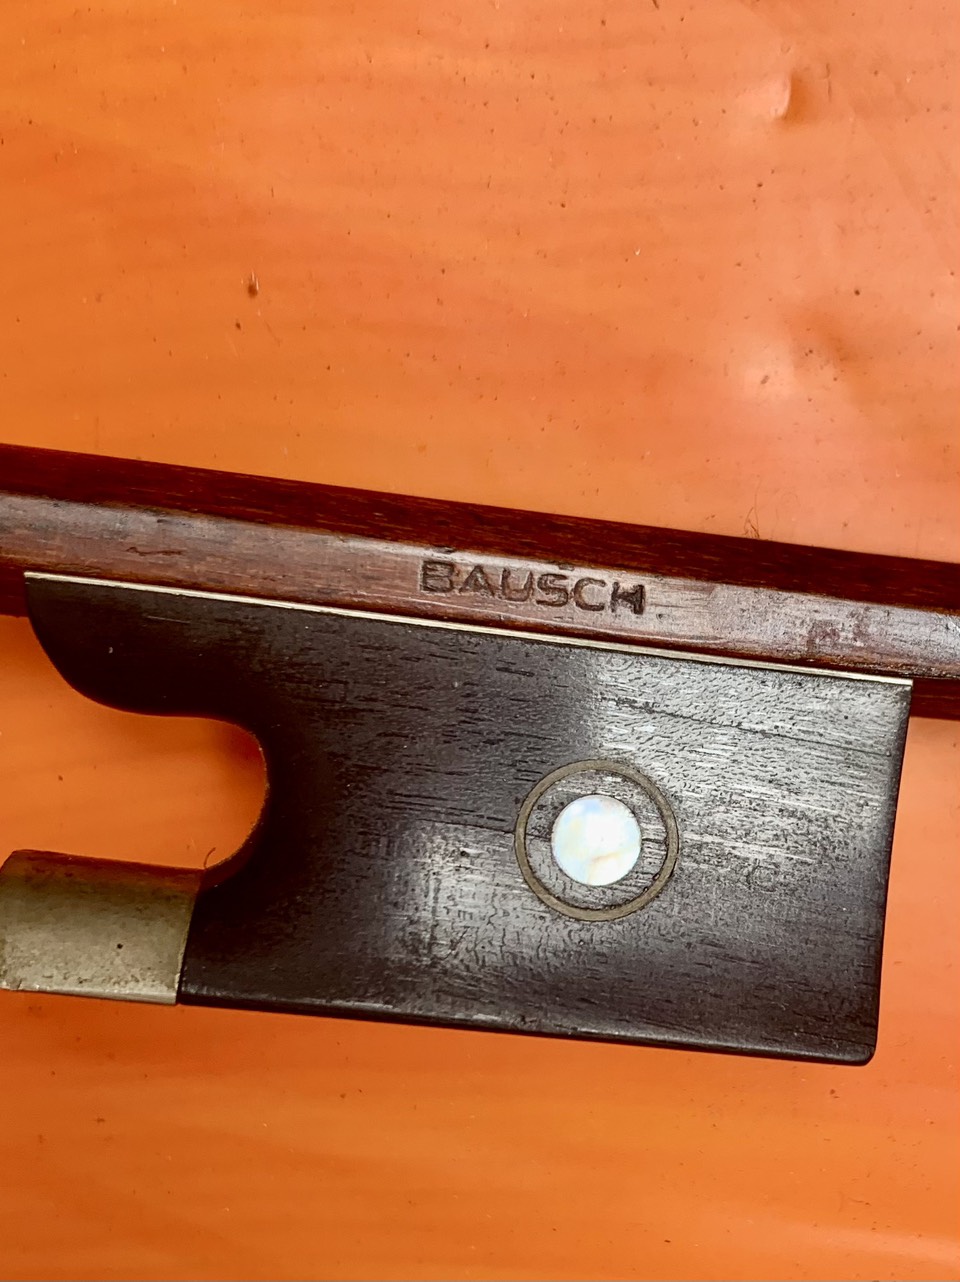 Bausch Bow -  Bausch Archet - Size 4/4 